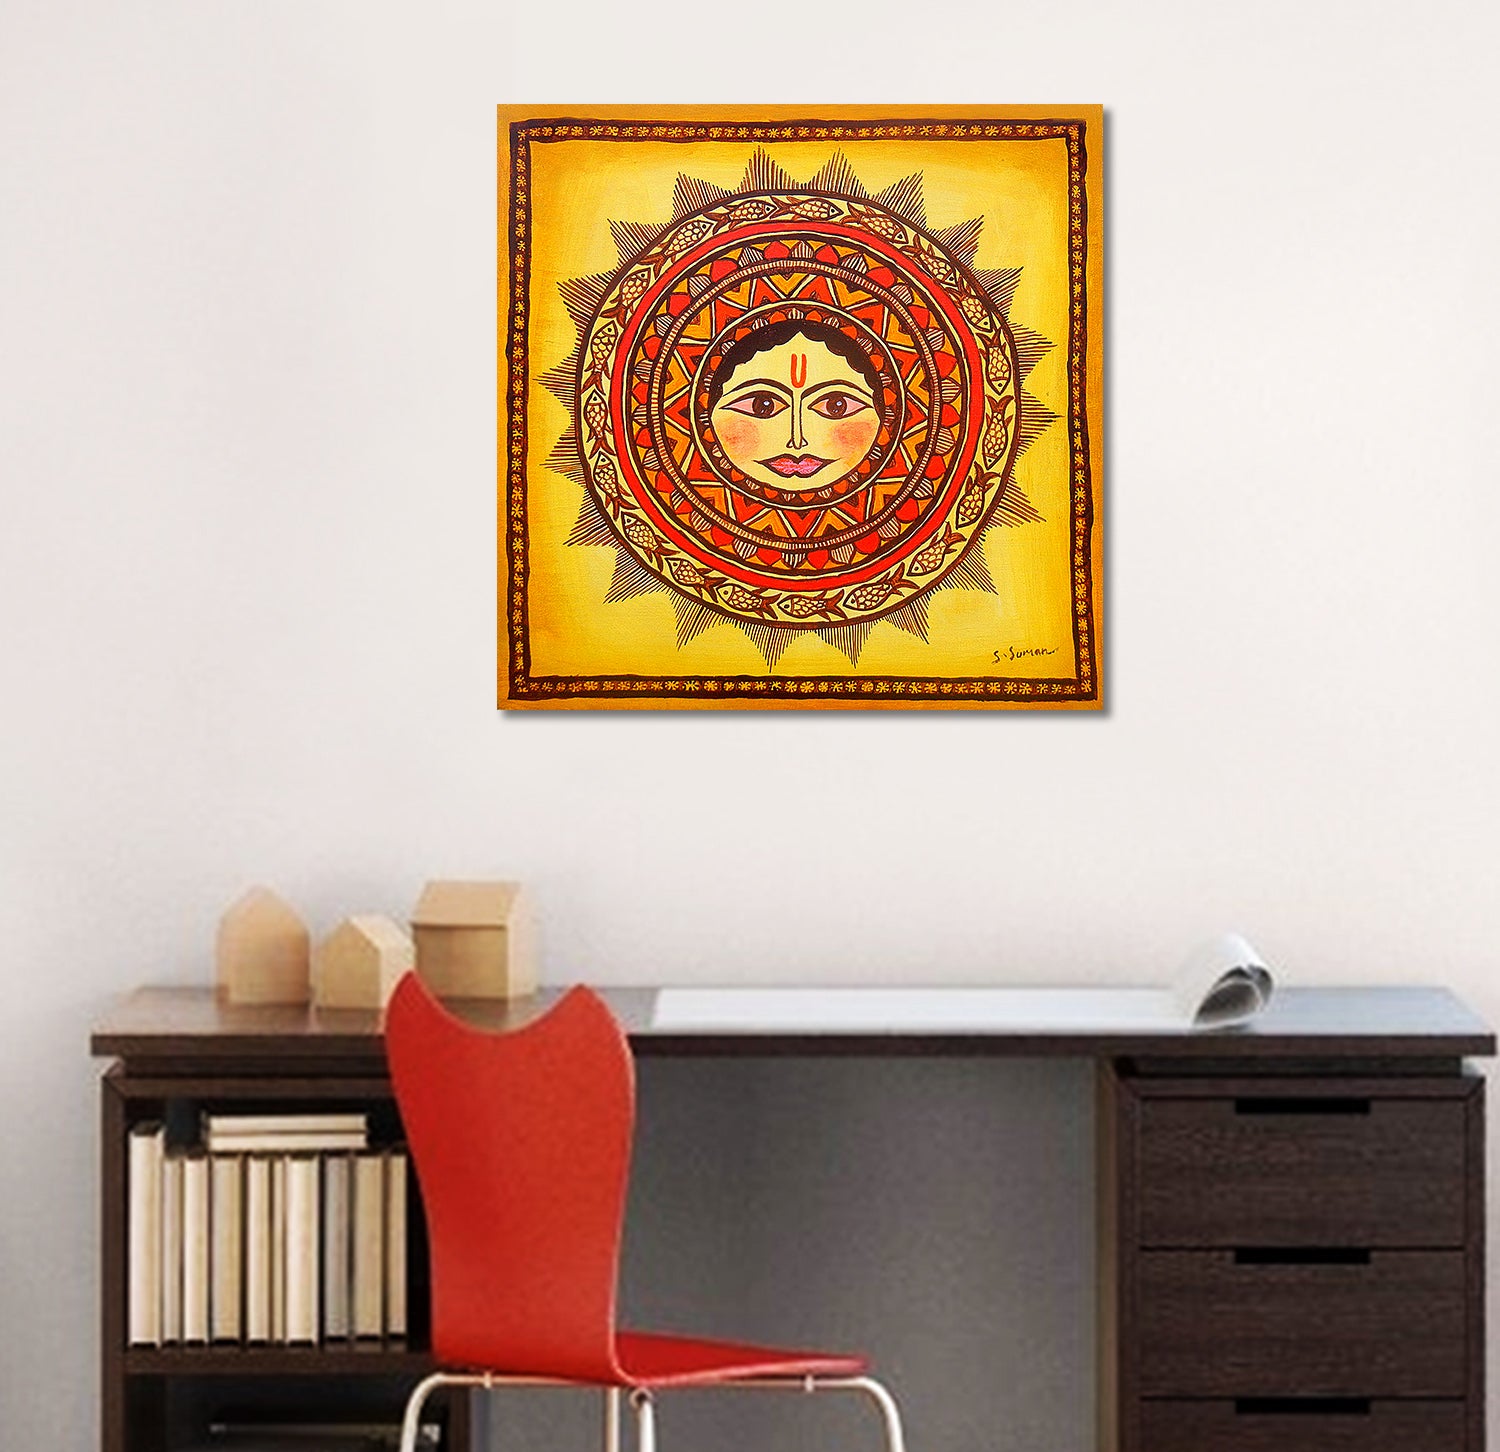 The Sun God - Unframed Canvas Painting